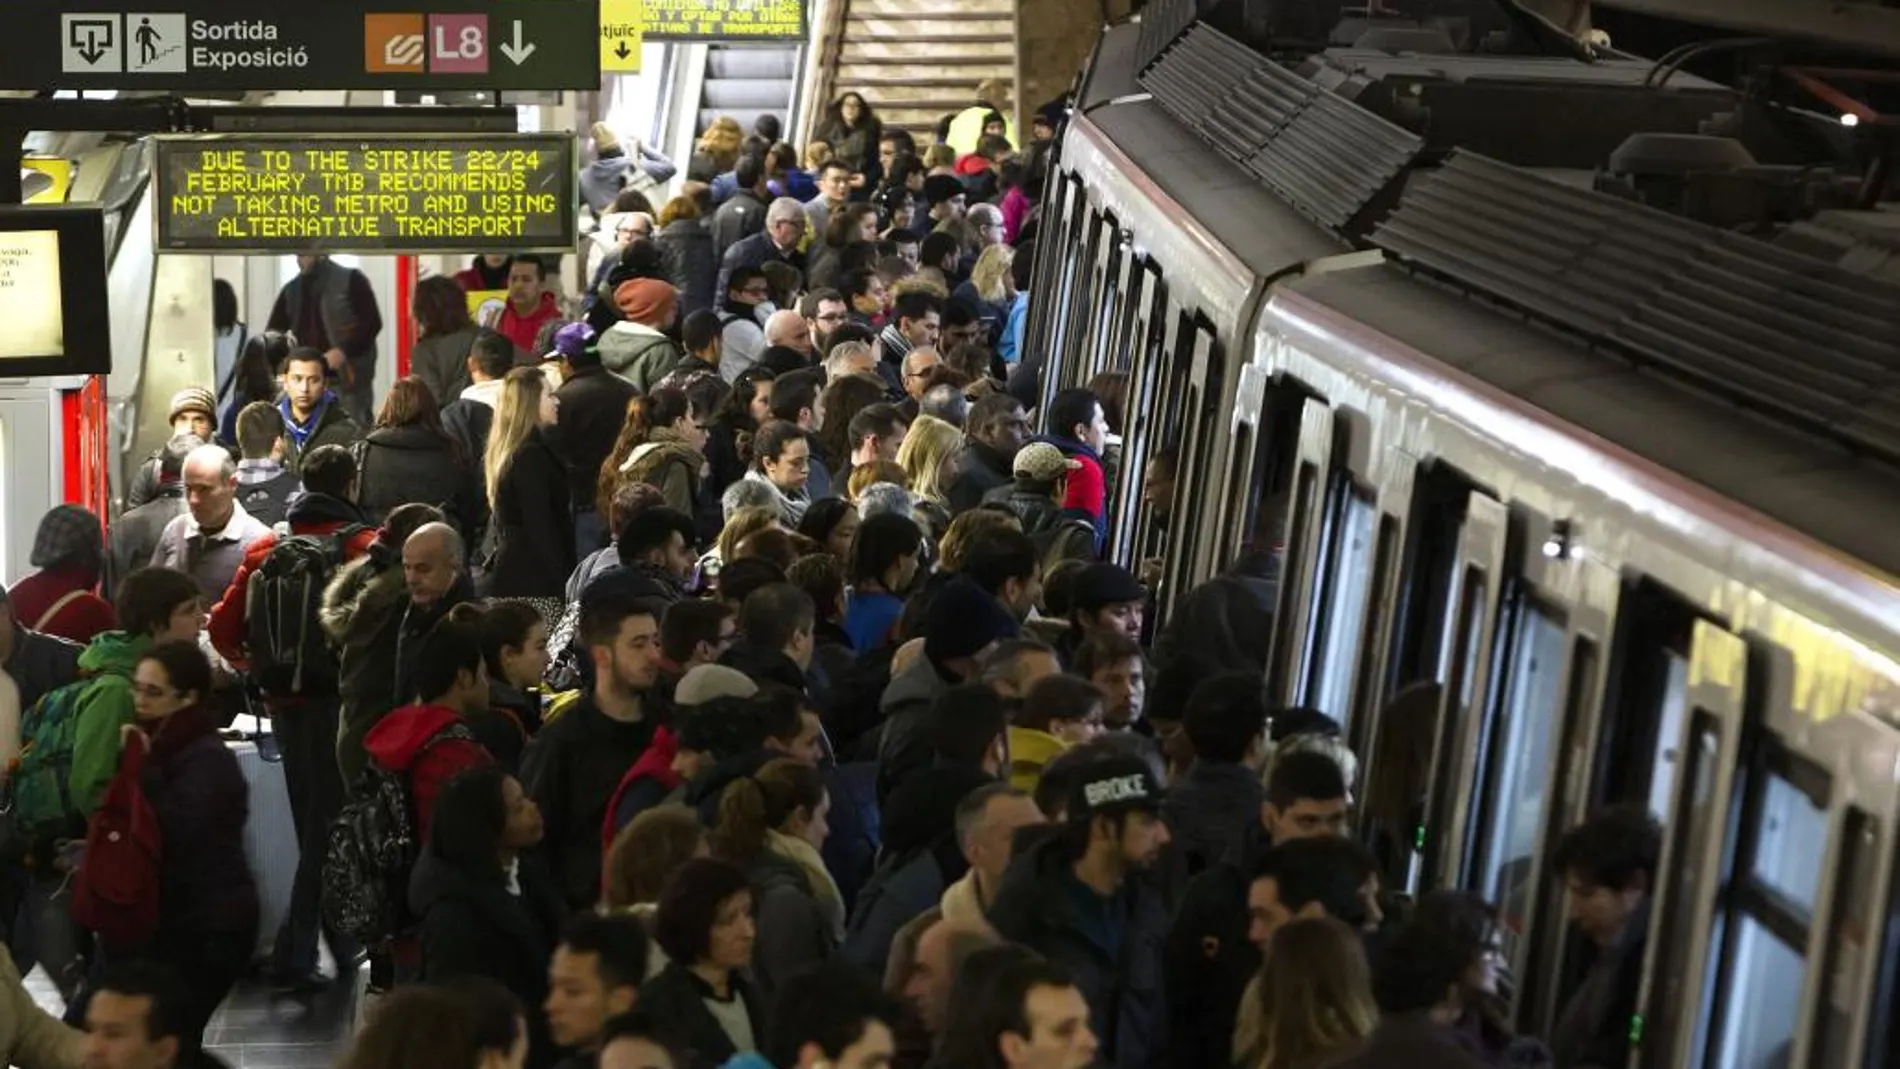 Usuarios del Metro de Barcelona esperan en el andén de la estación de Plaza España la llegada de un convoy durante los servicios mínimos decretados en la jornada de huelga de Metro